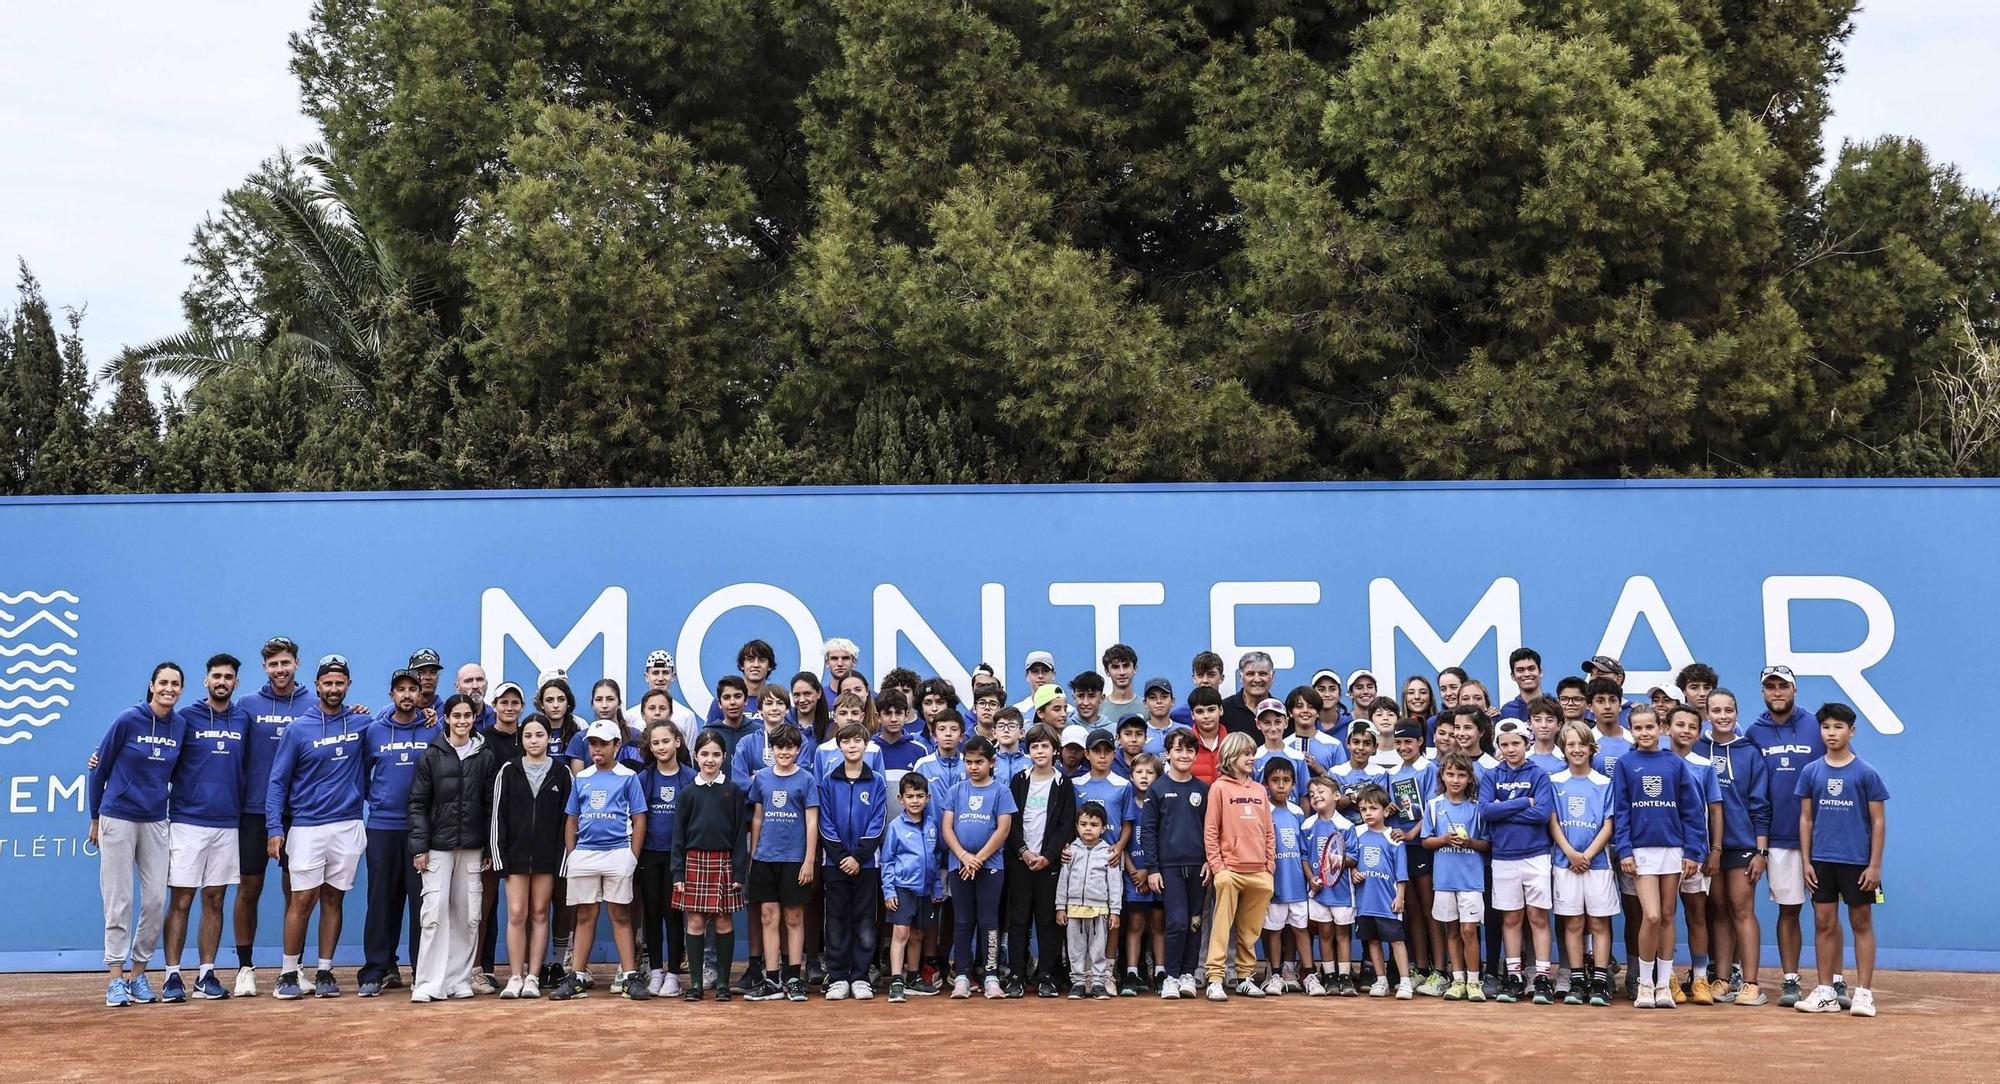 Toni Nadal ofrece una charla en la pista central sobre motivación en Montemar